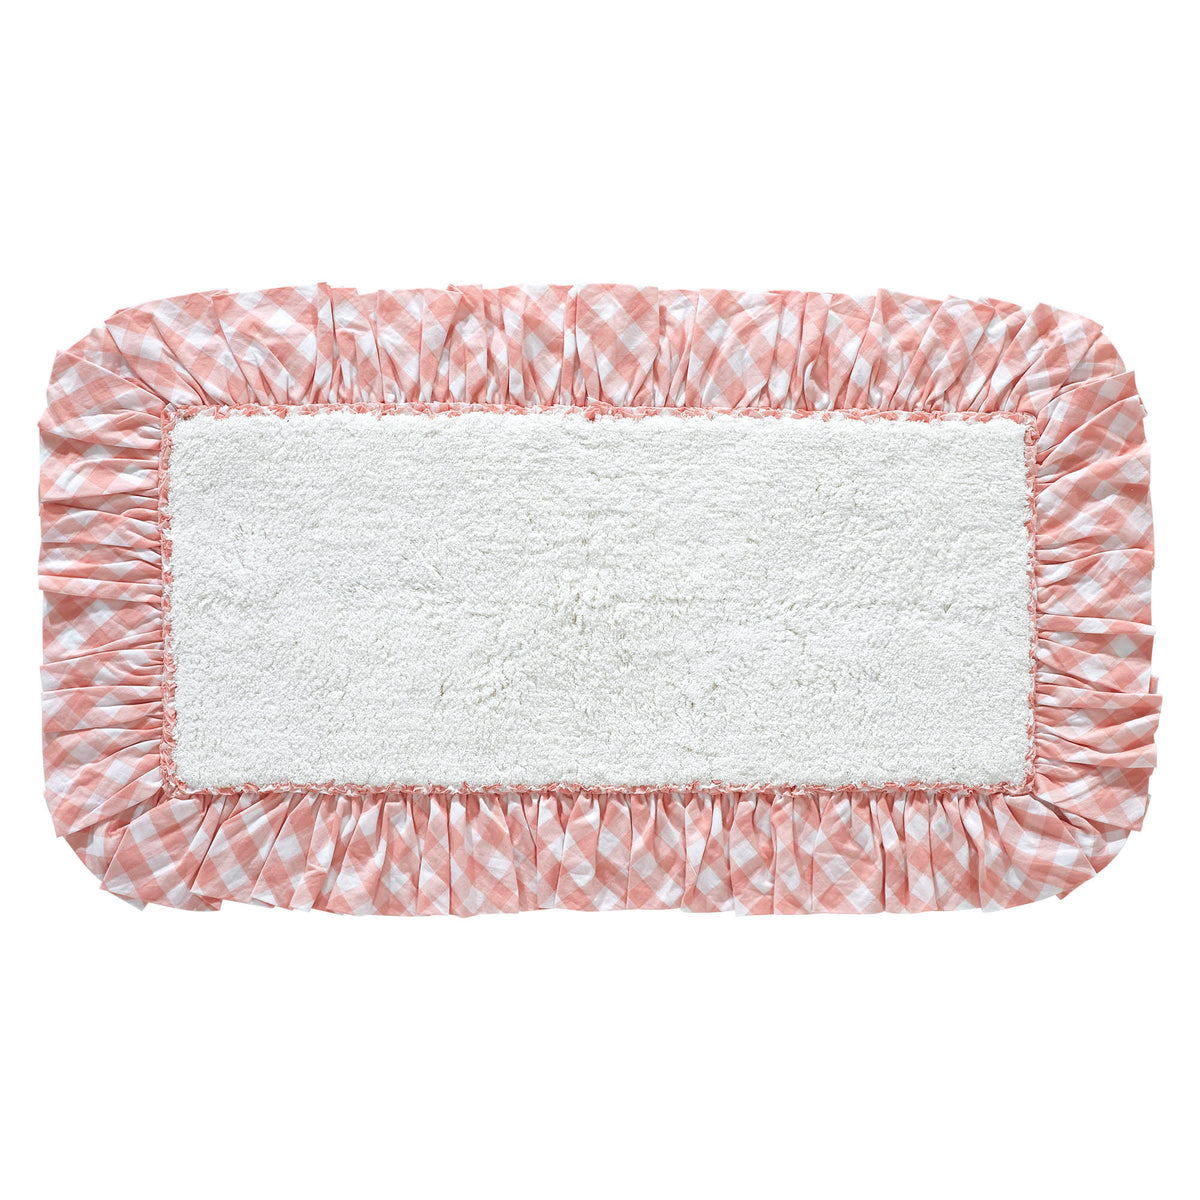 Annie Buffalo Coral Check Bathmat 27x48